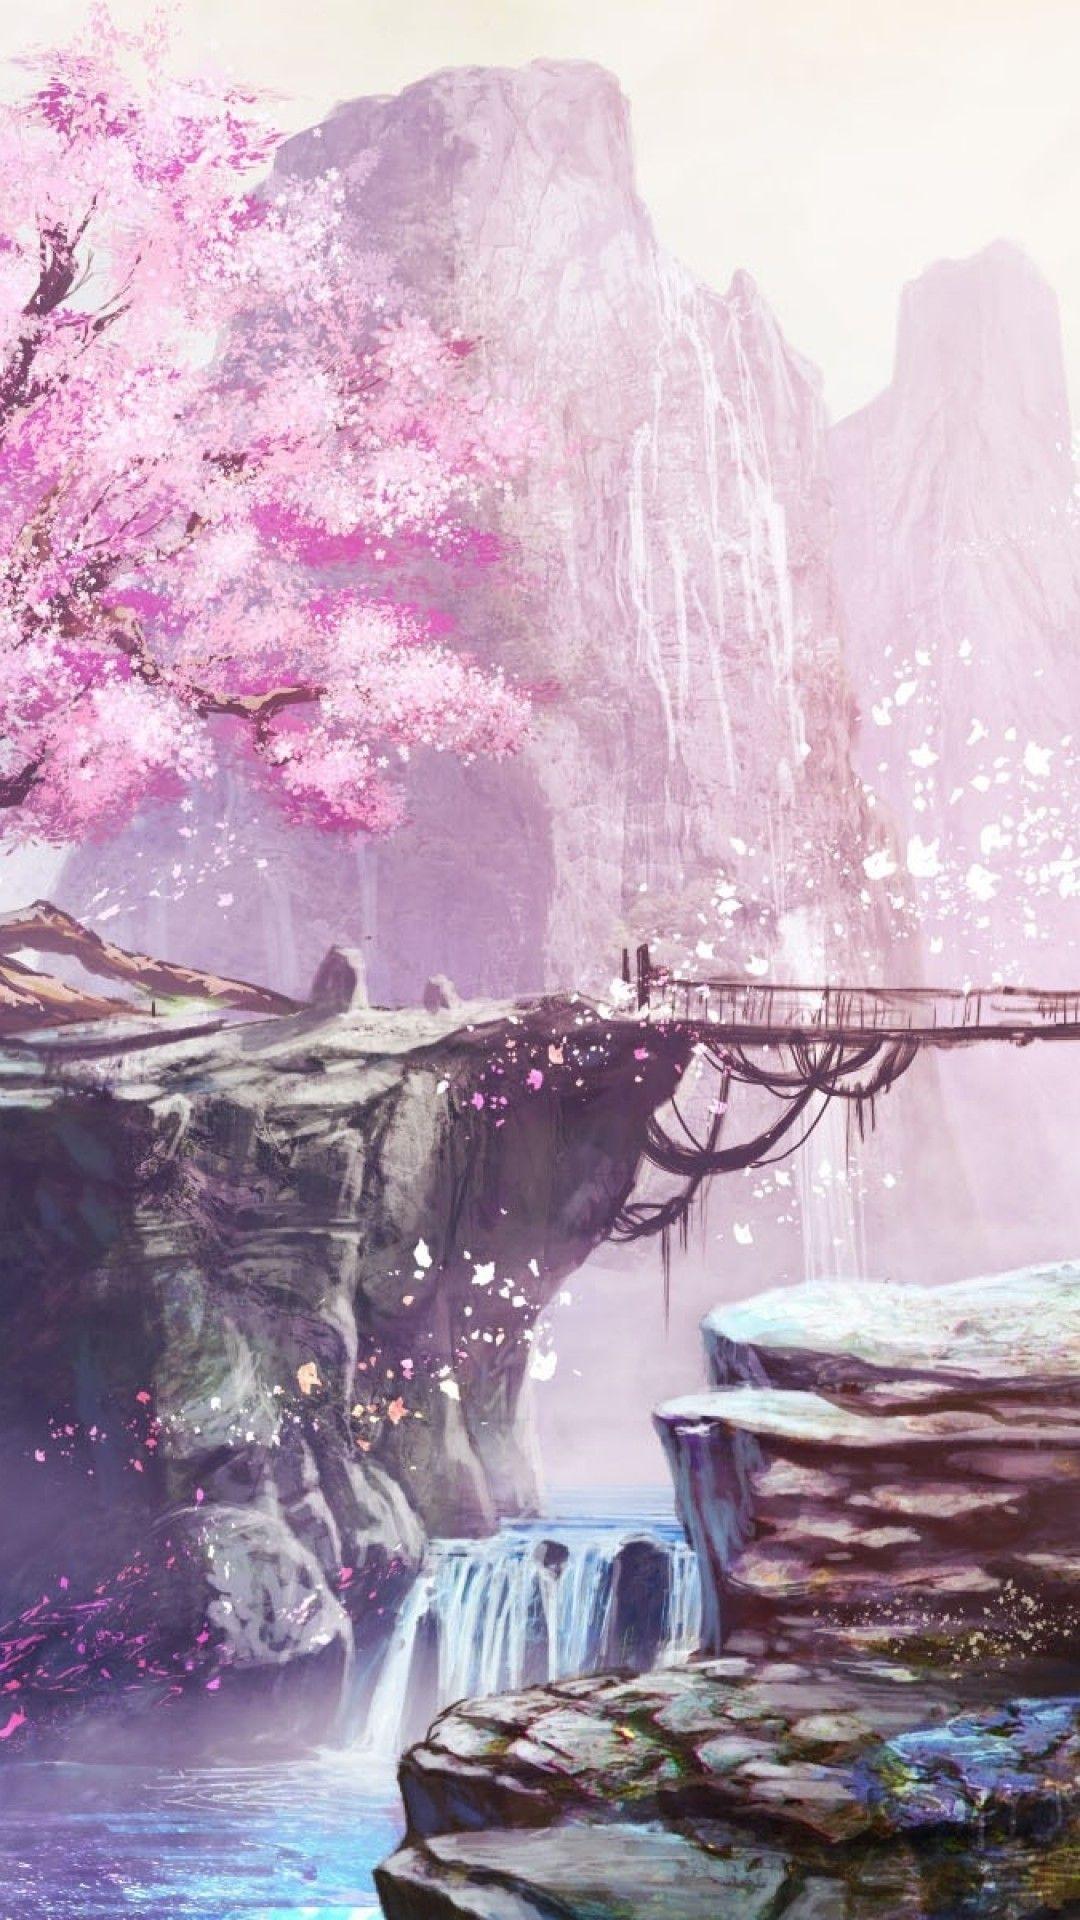 Cherry Blossom Tree Anime Wallpapers - Top Những Hình Ảnh Đẹp